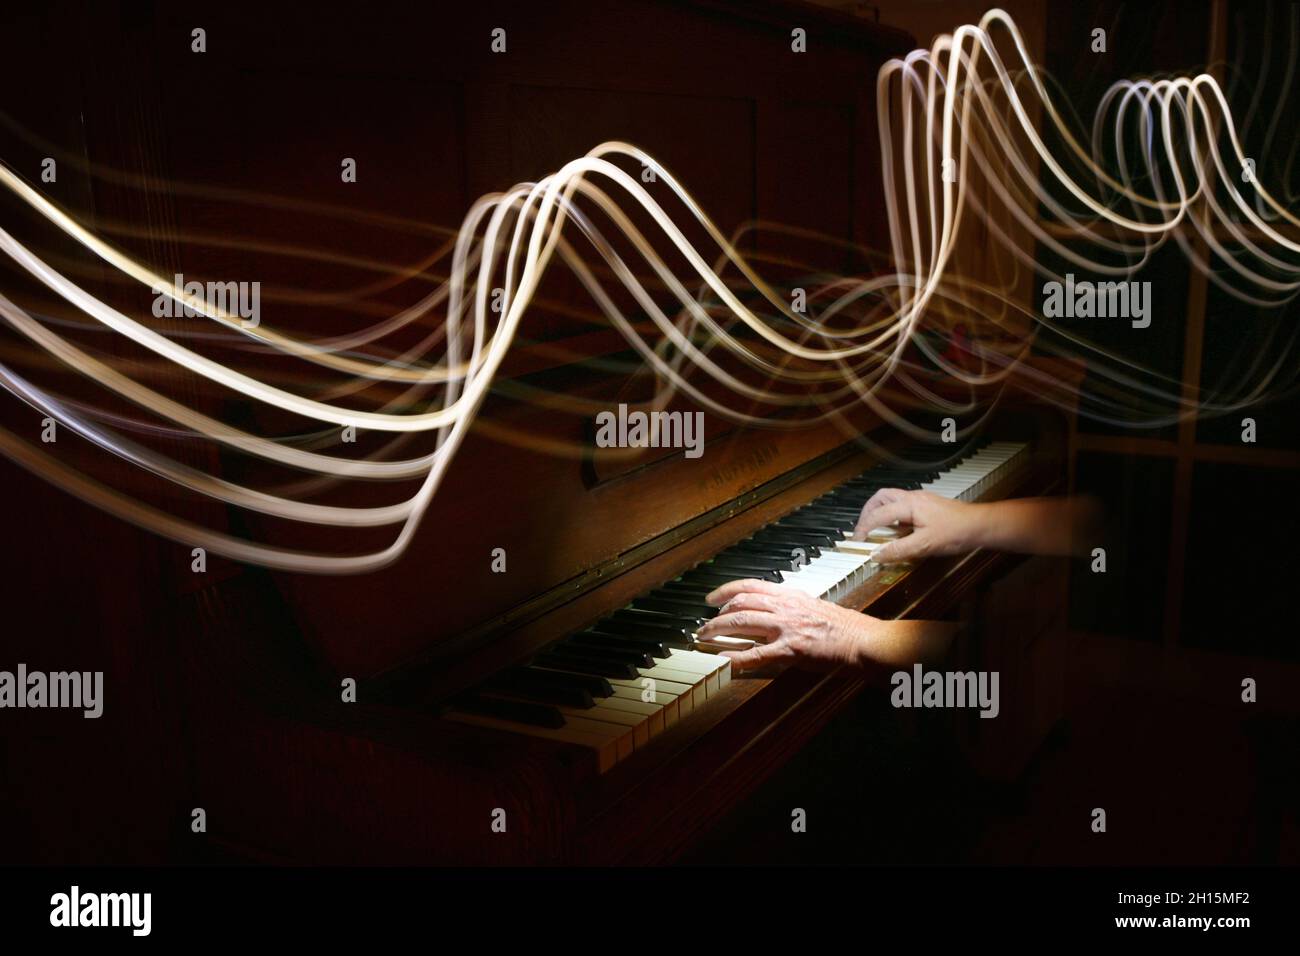 Helle Malerei in Form von geschwungenen Stablinien über den Händen, die auf einem alten Klavier spielen, Musikwellen, dunkler Hintergrund mit Kopierraum, Bewegungsunschärfe, se Stockfoto